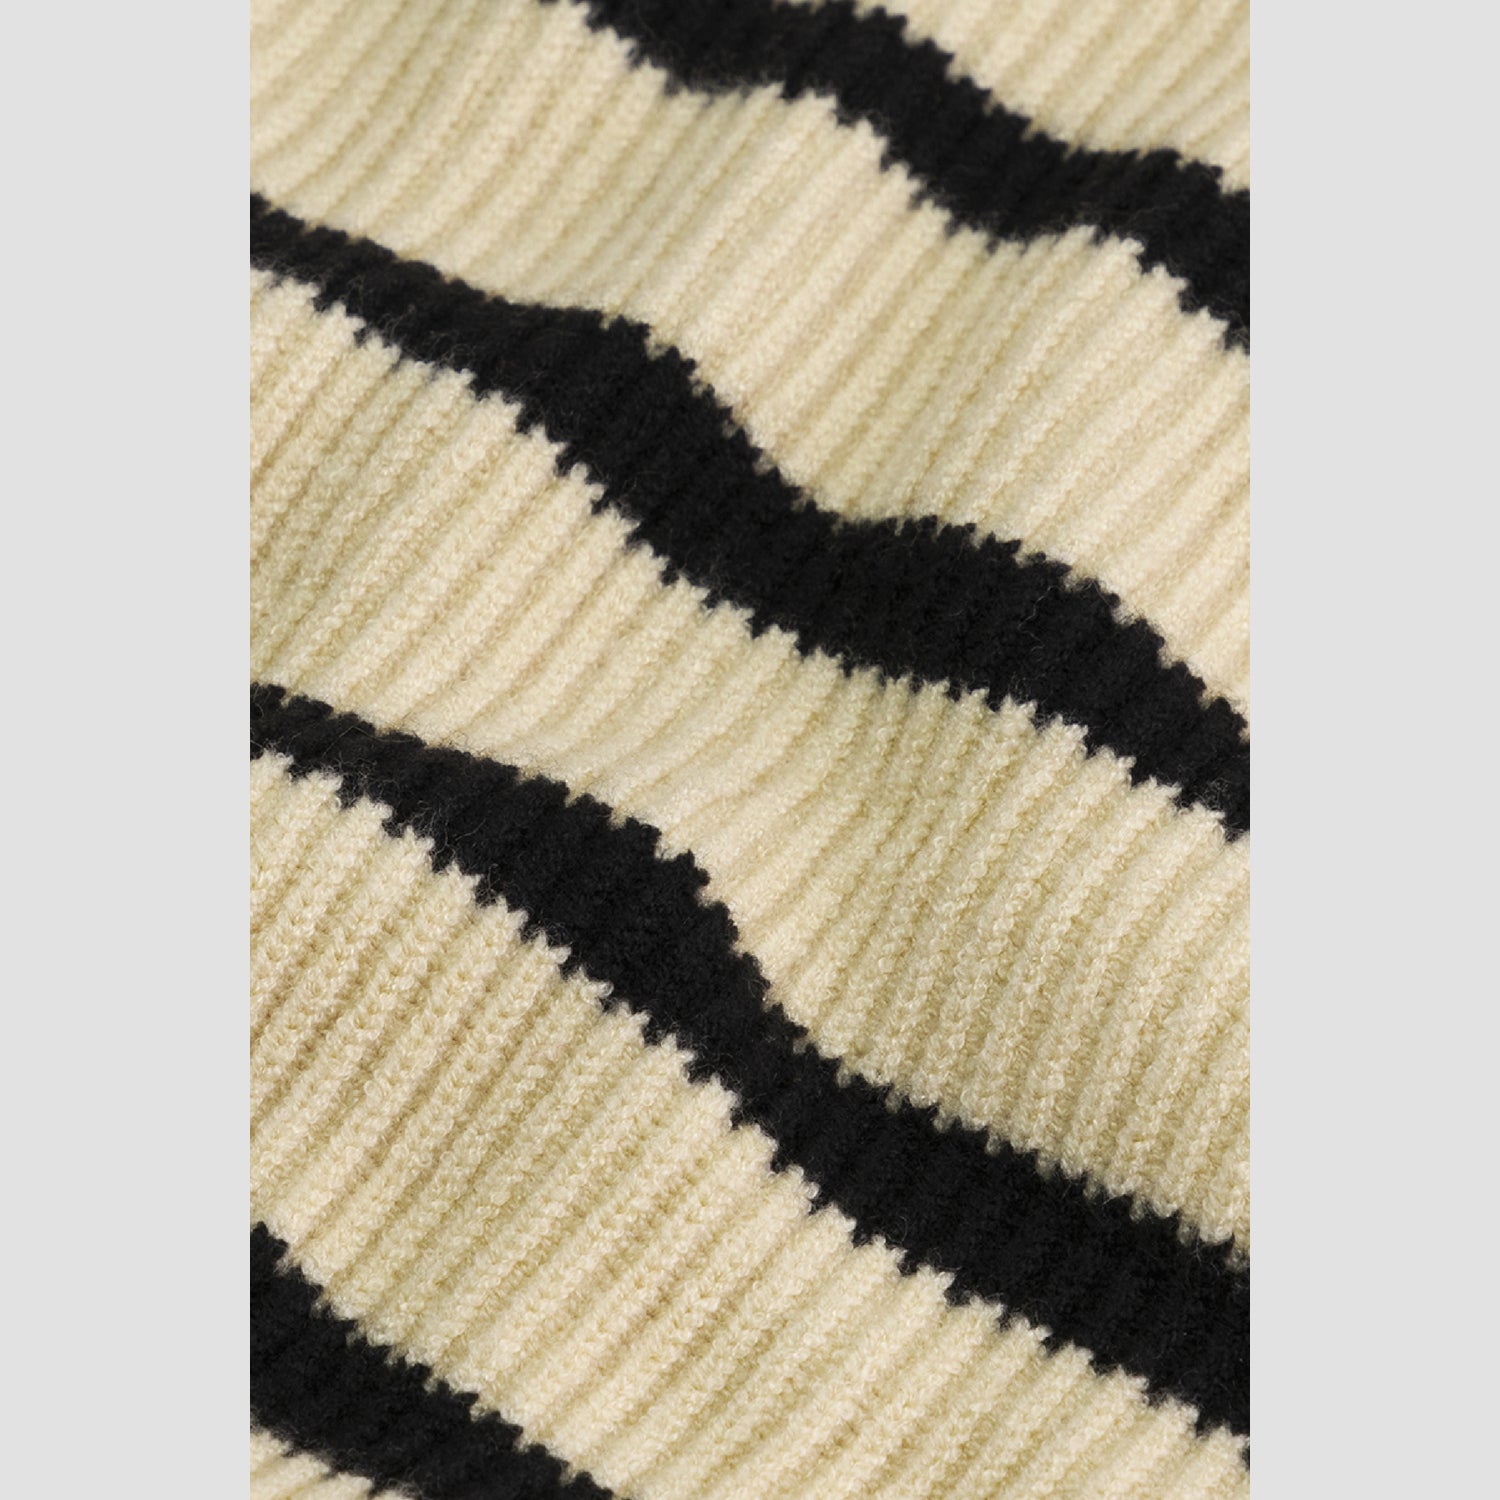 WMN Knit Zip Mock - Off White / Black